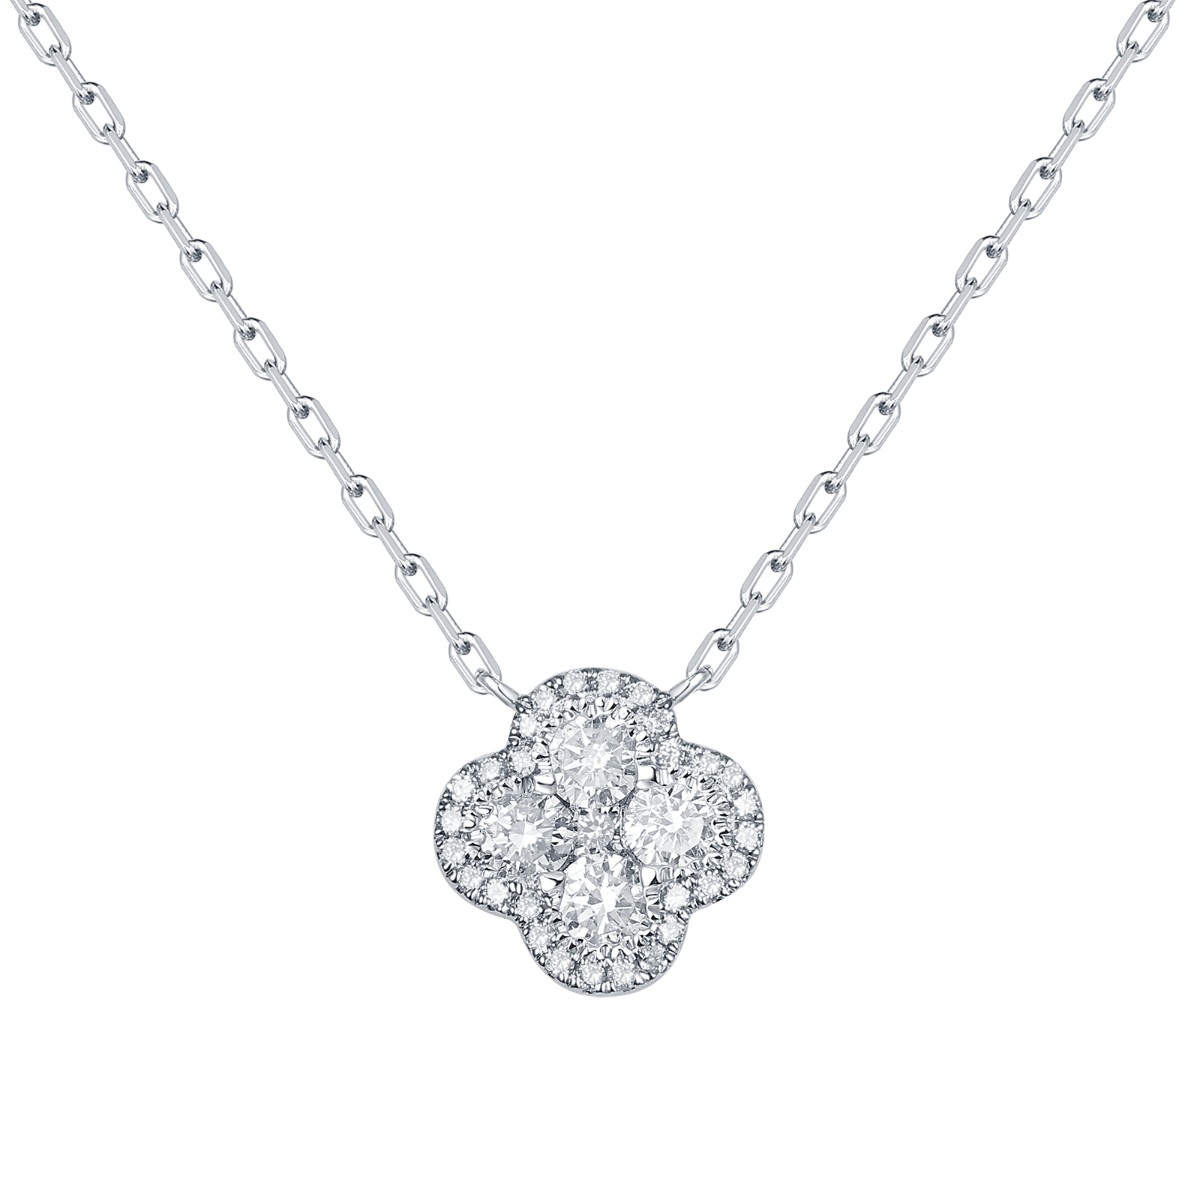 NL36989WHT – 18K White Gold Diamond Necklace, 0.39 TCW